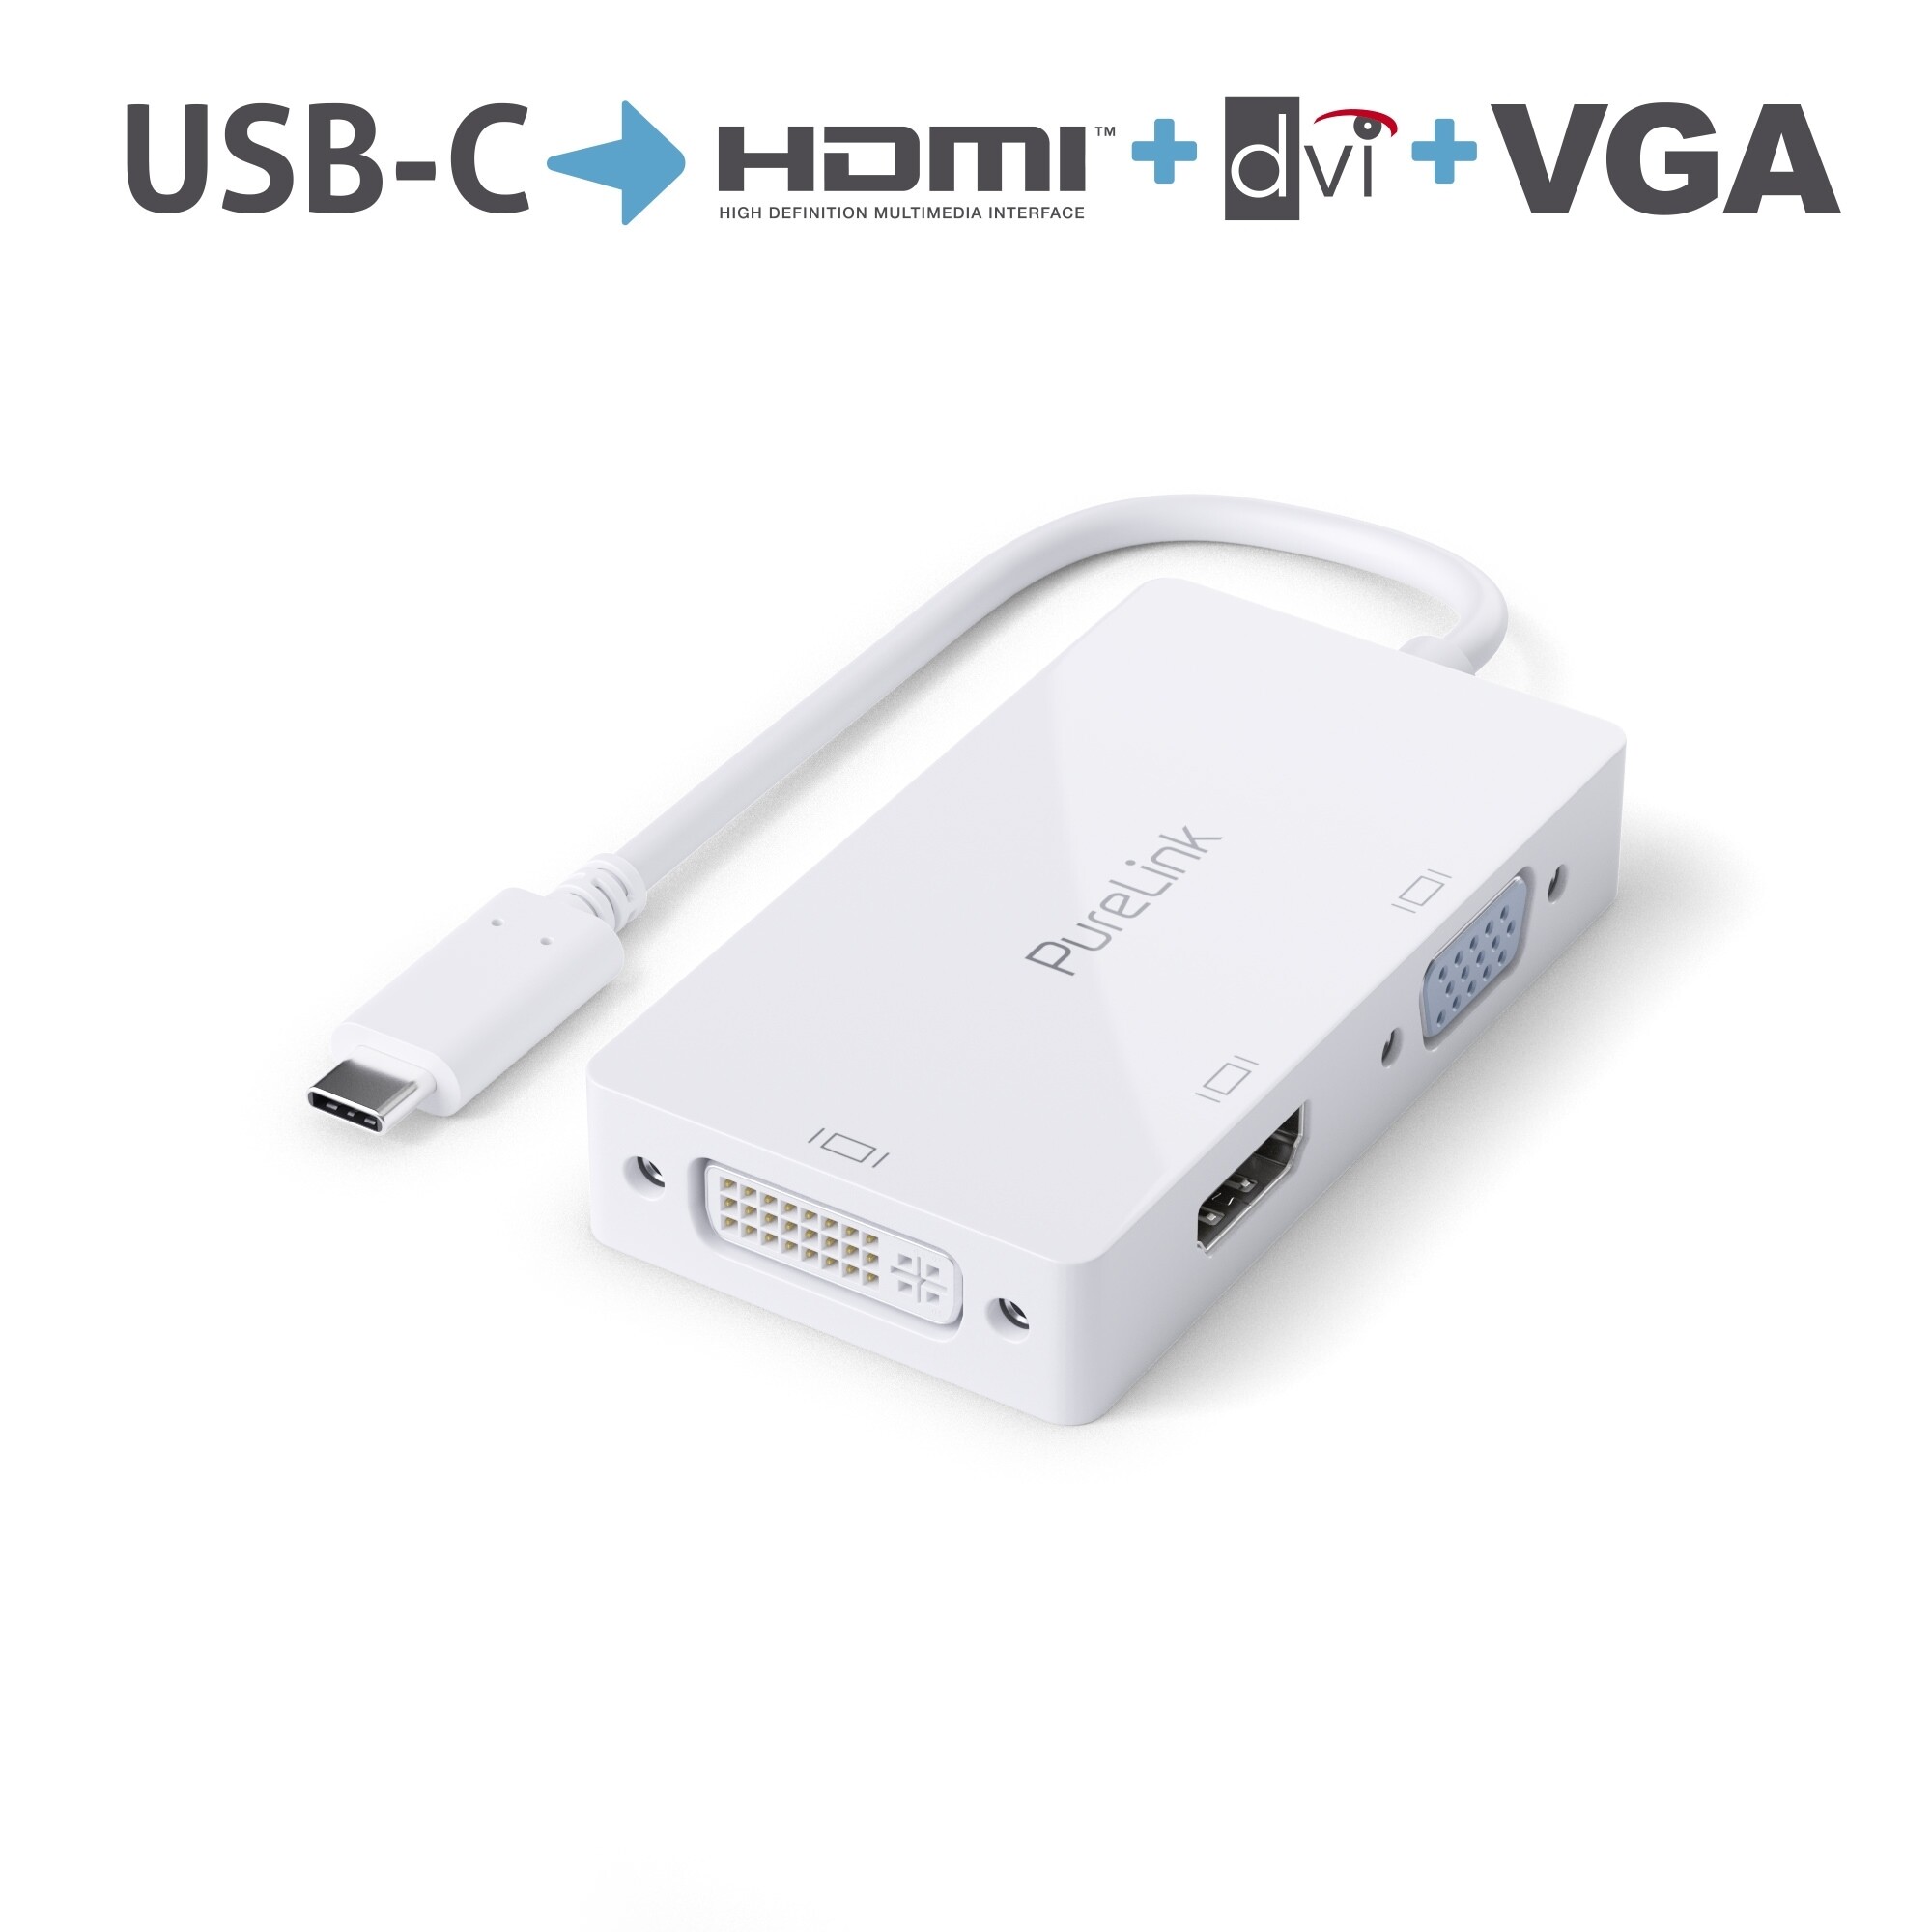 Purelink-IS240-USB-C-auf-HDMI-DVI-VGA-Adapter-0-10m-weiss